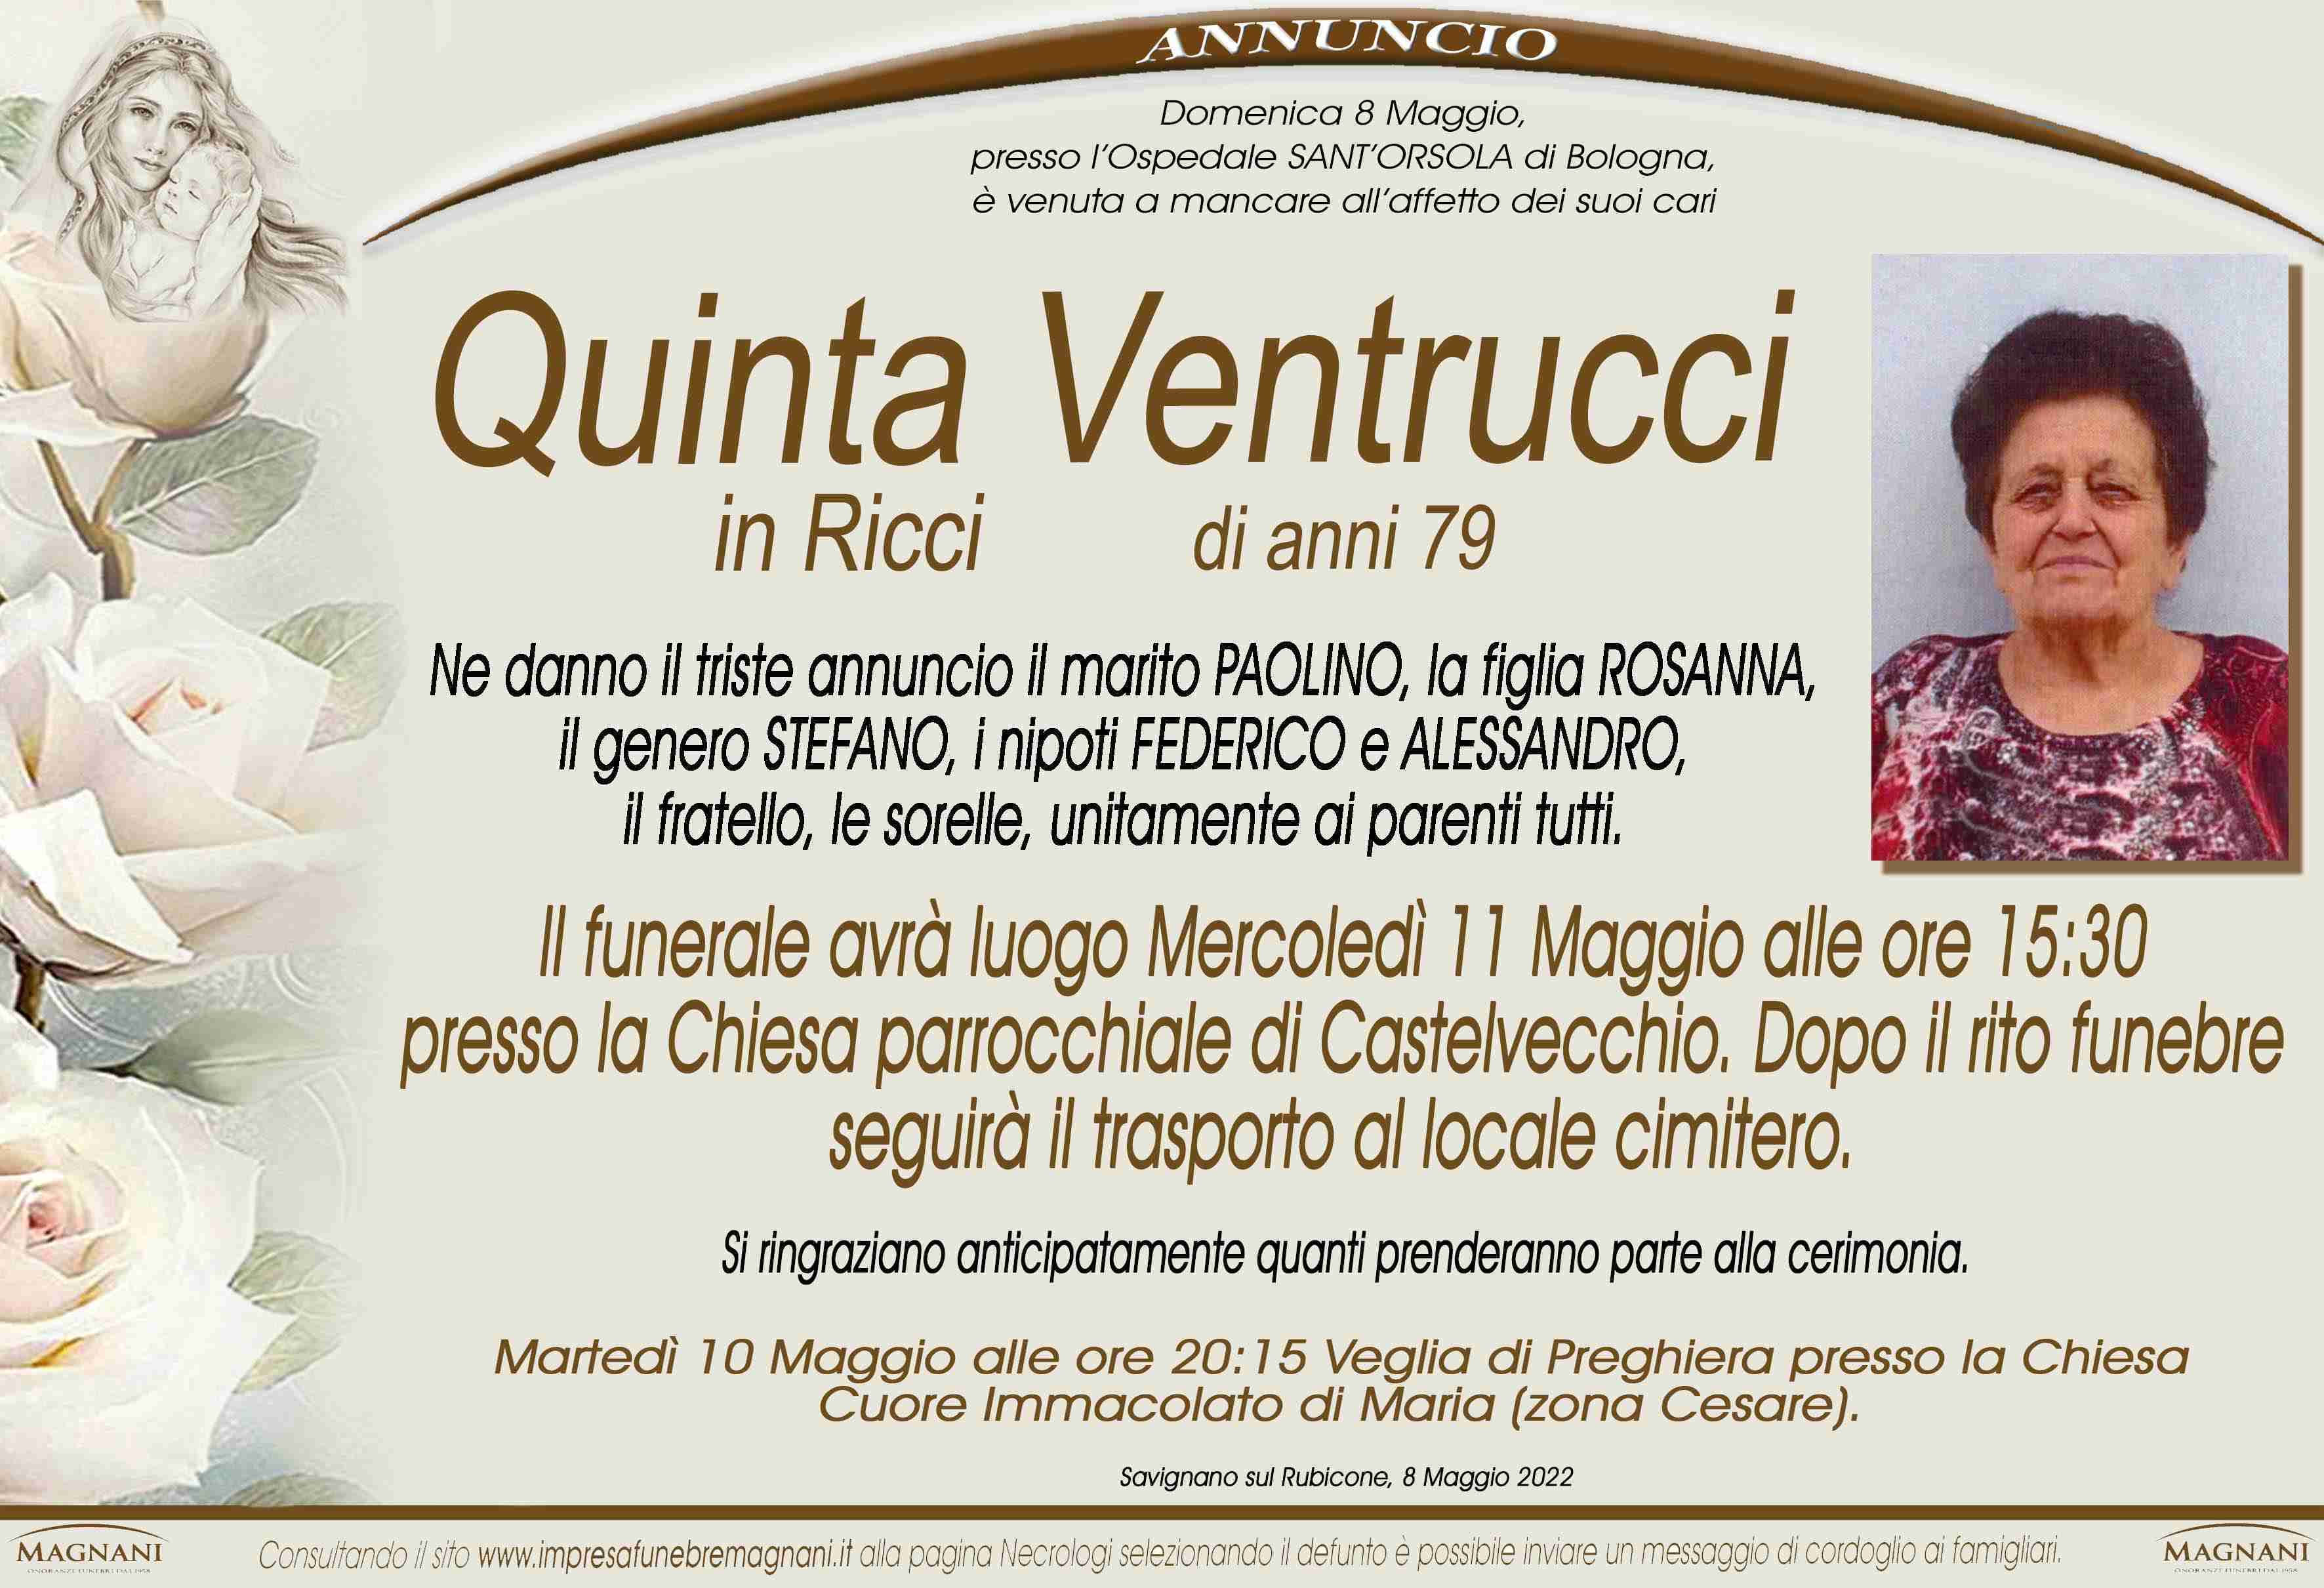 Quinta Ventrucci